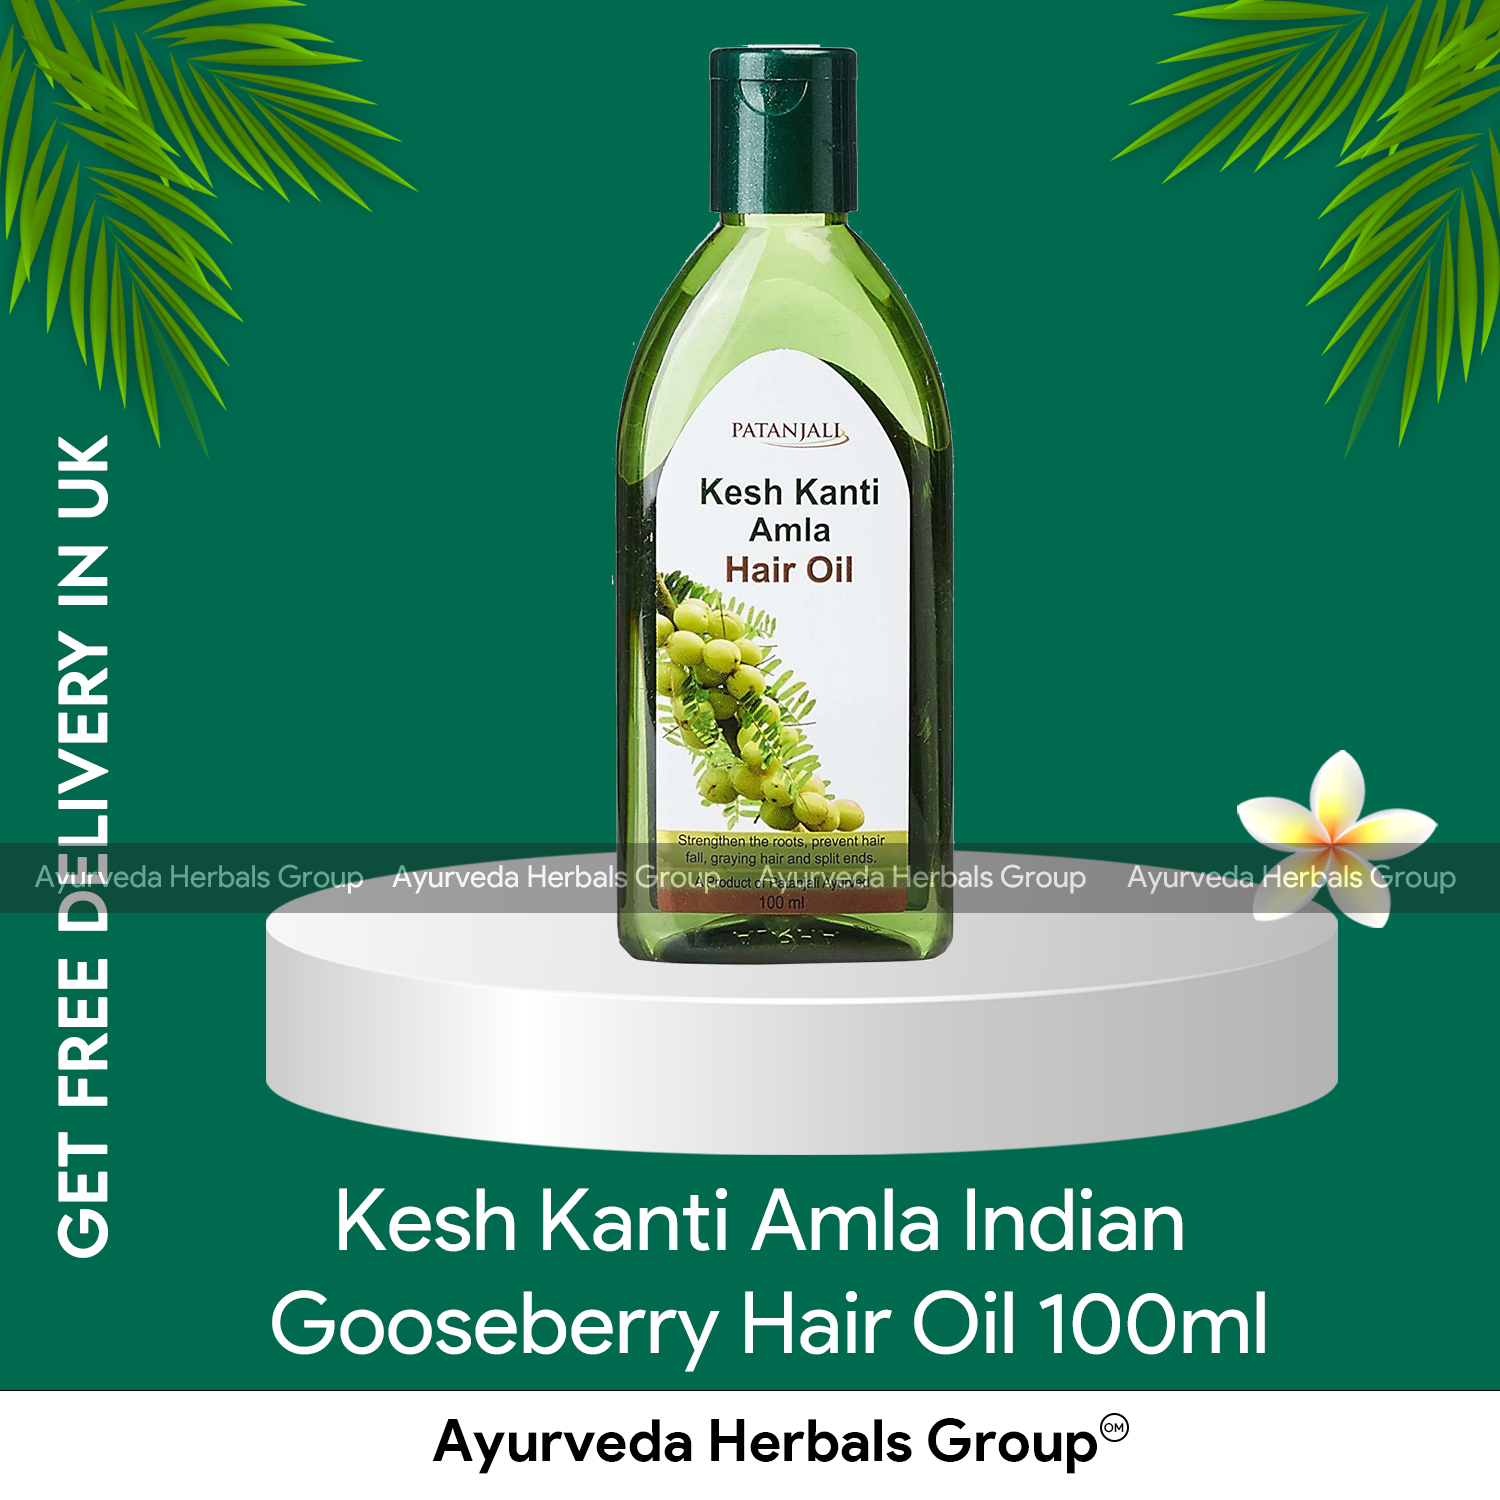 Kesh kanti Hair Cleanser - Patanjali - 5.5ml